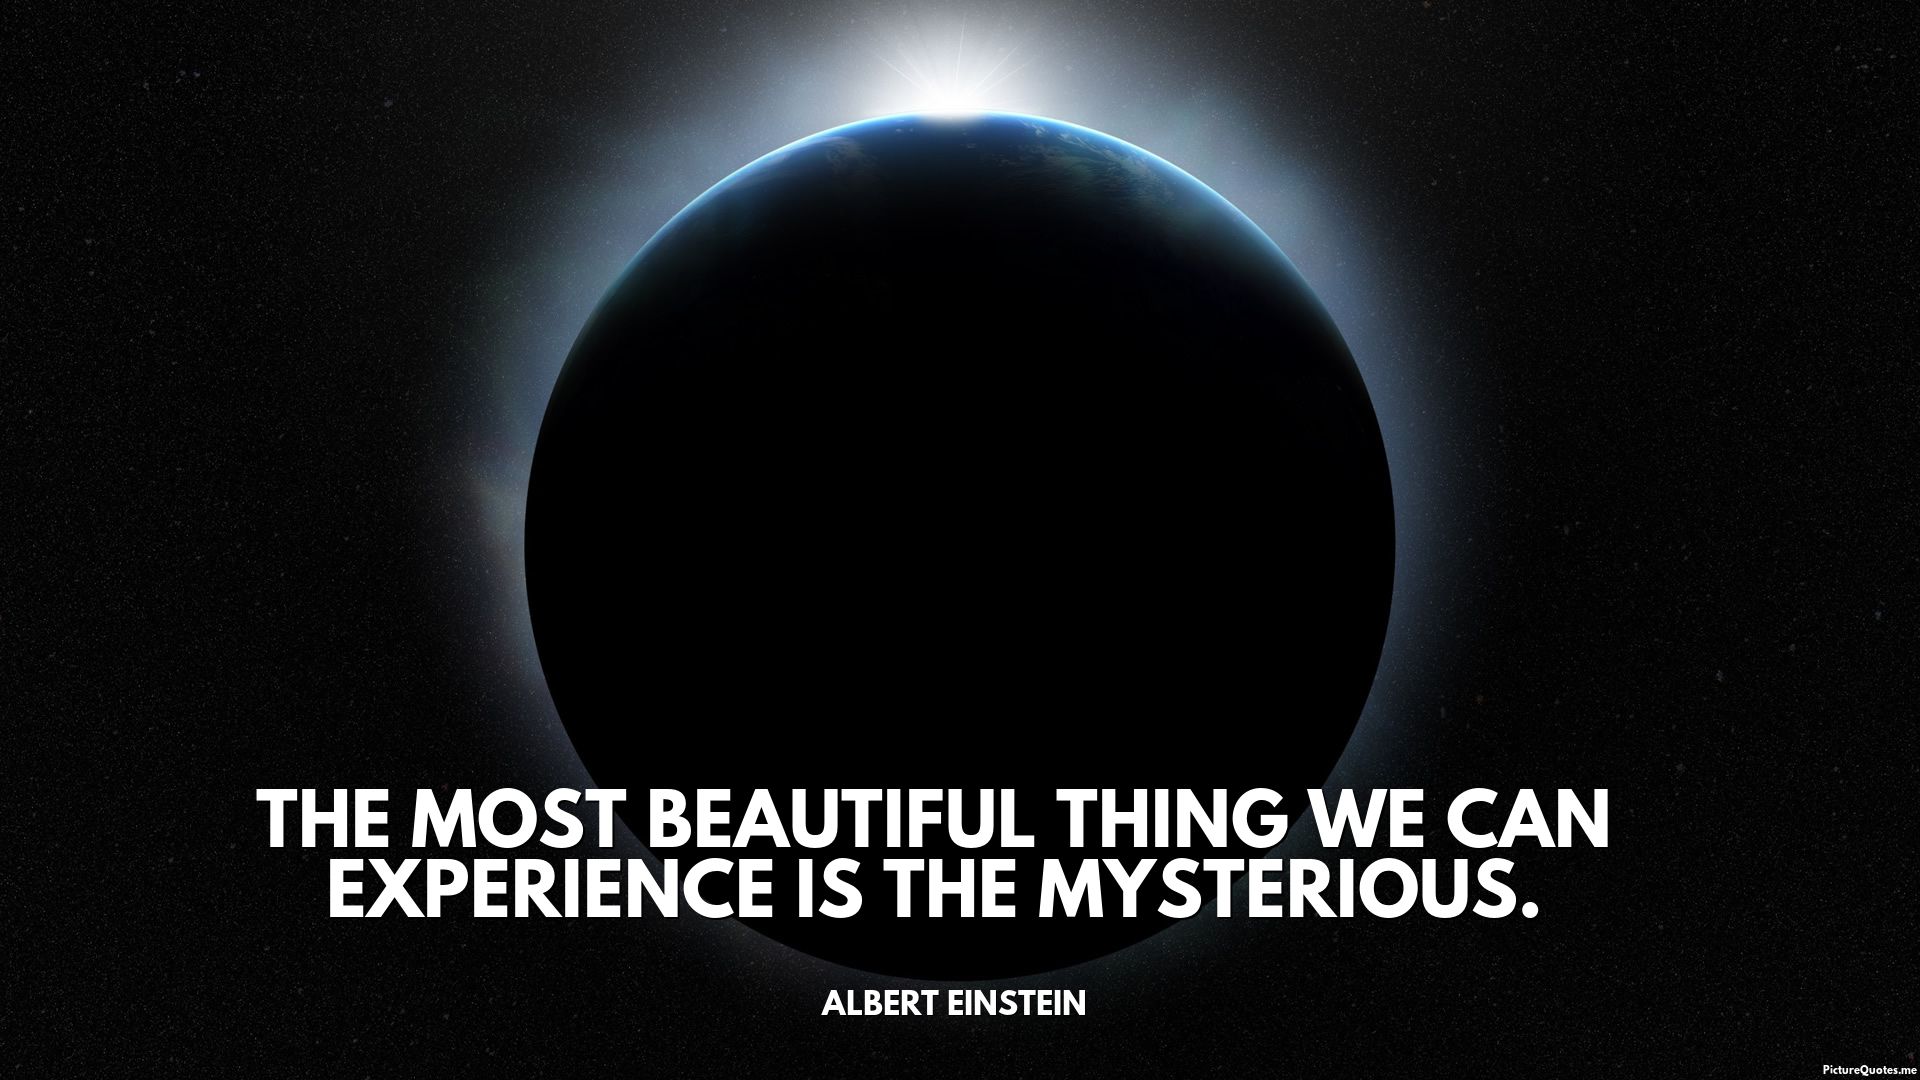 Albert Einstein Quote HD Wallpaperx1080